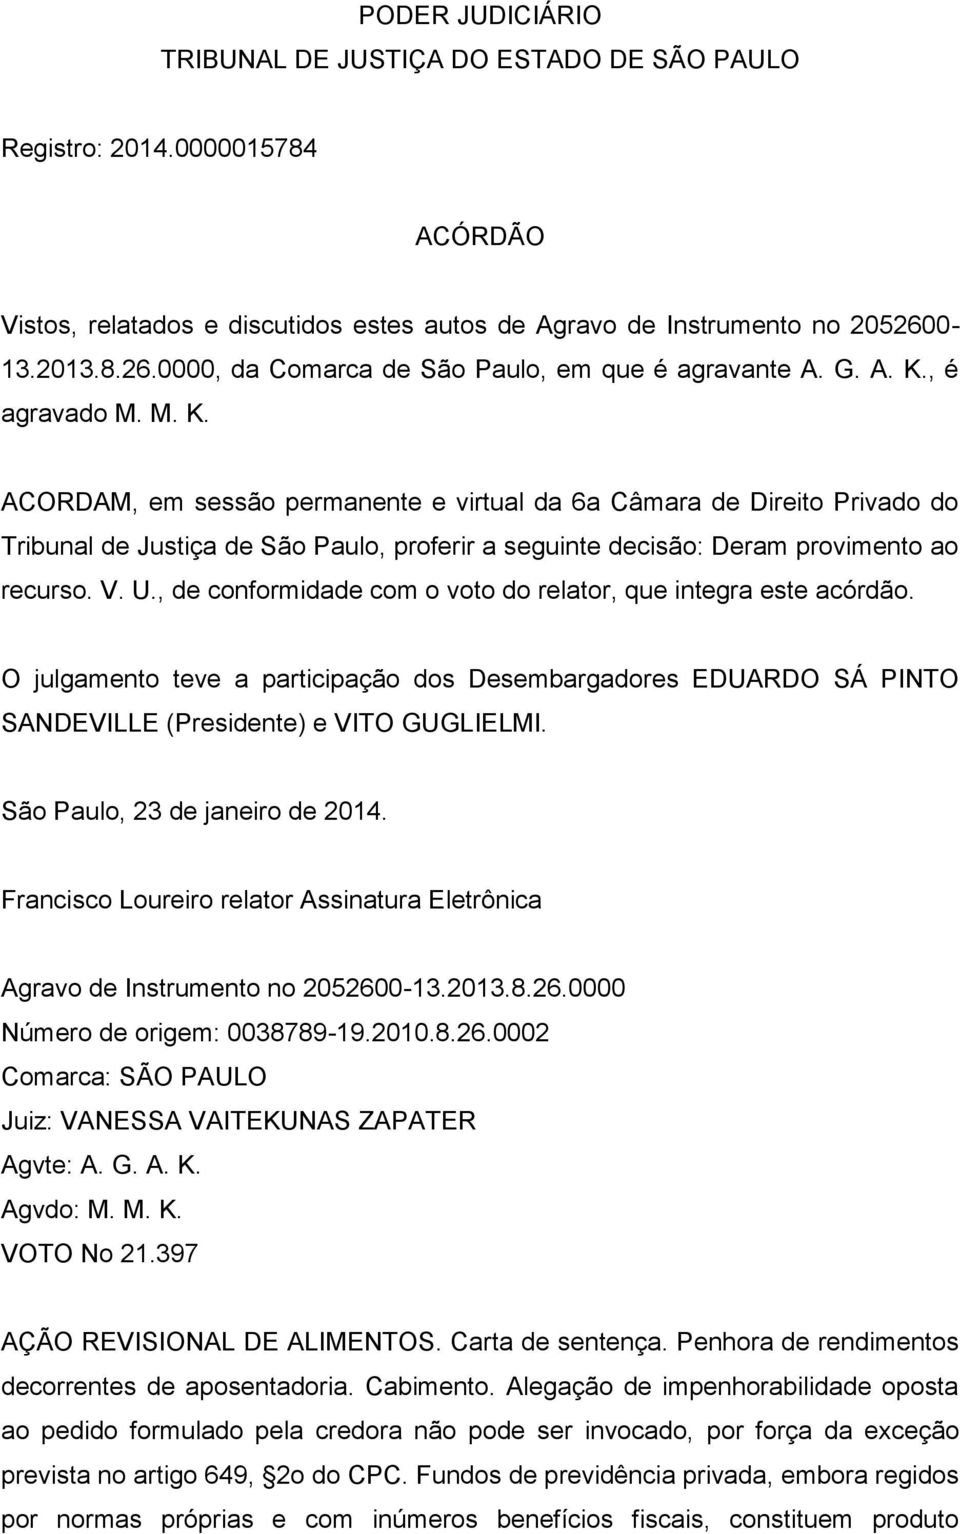 , é agravado M. M. K. ACORDAM, em sessão permanente e virtual da 6a Câmara de Direito Privado do Tribunal de Justiça de São Paulo, proferir a seguinte decisão: Deram provimento ao recurso. V. U.